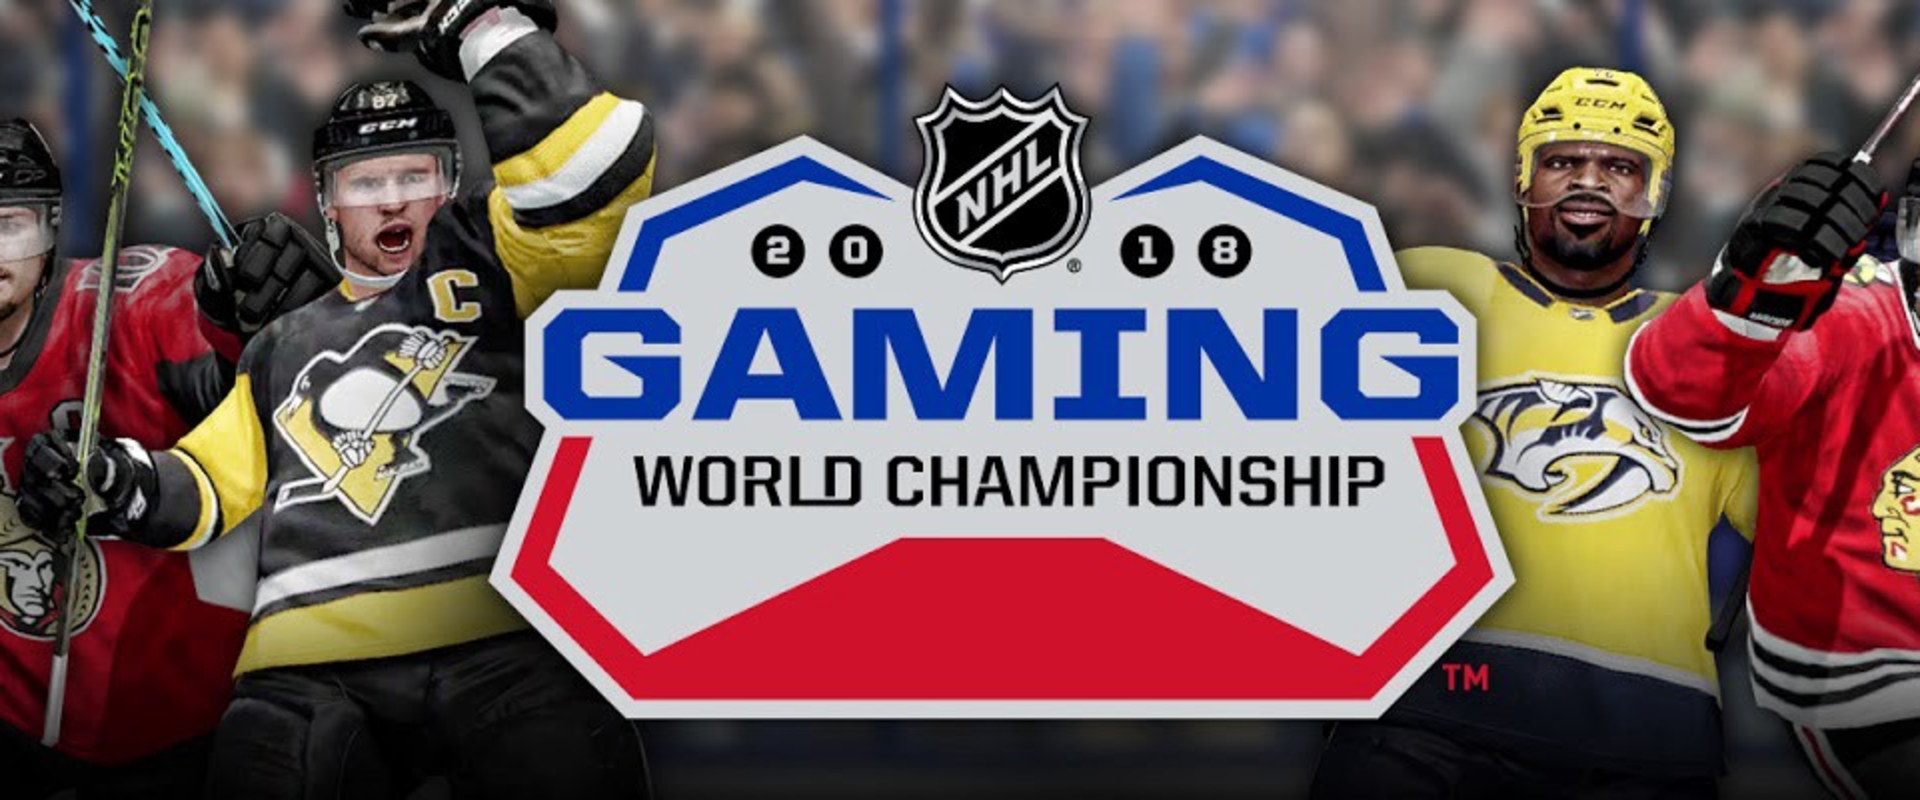 Az NHL18 is elindítja a World Championship versenysorozatát!